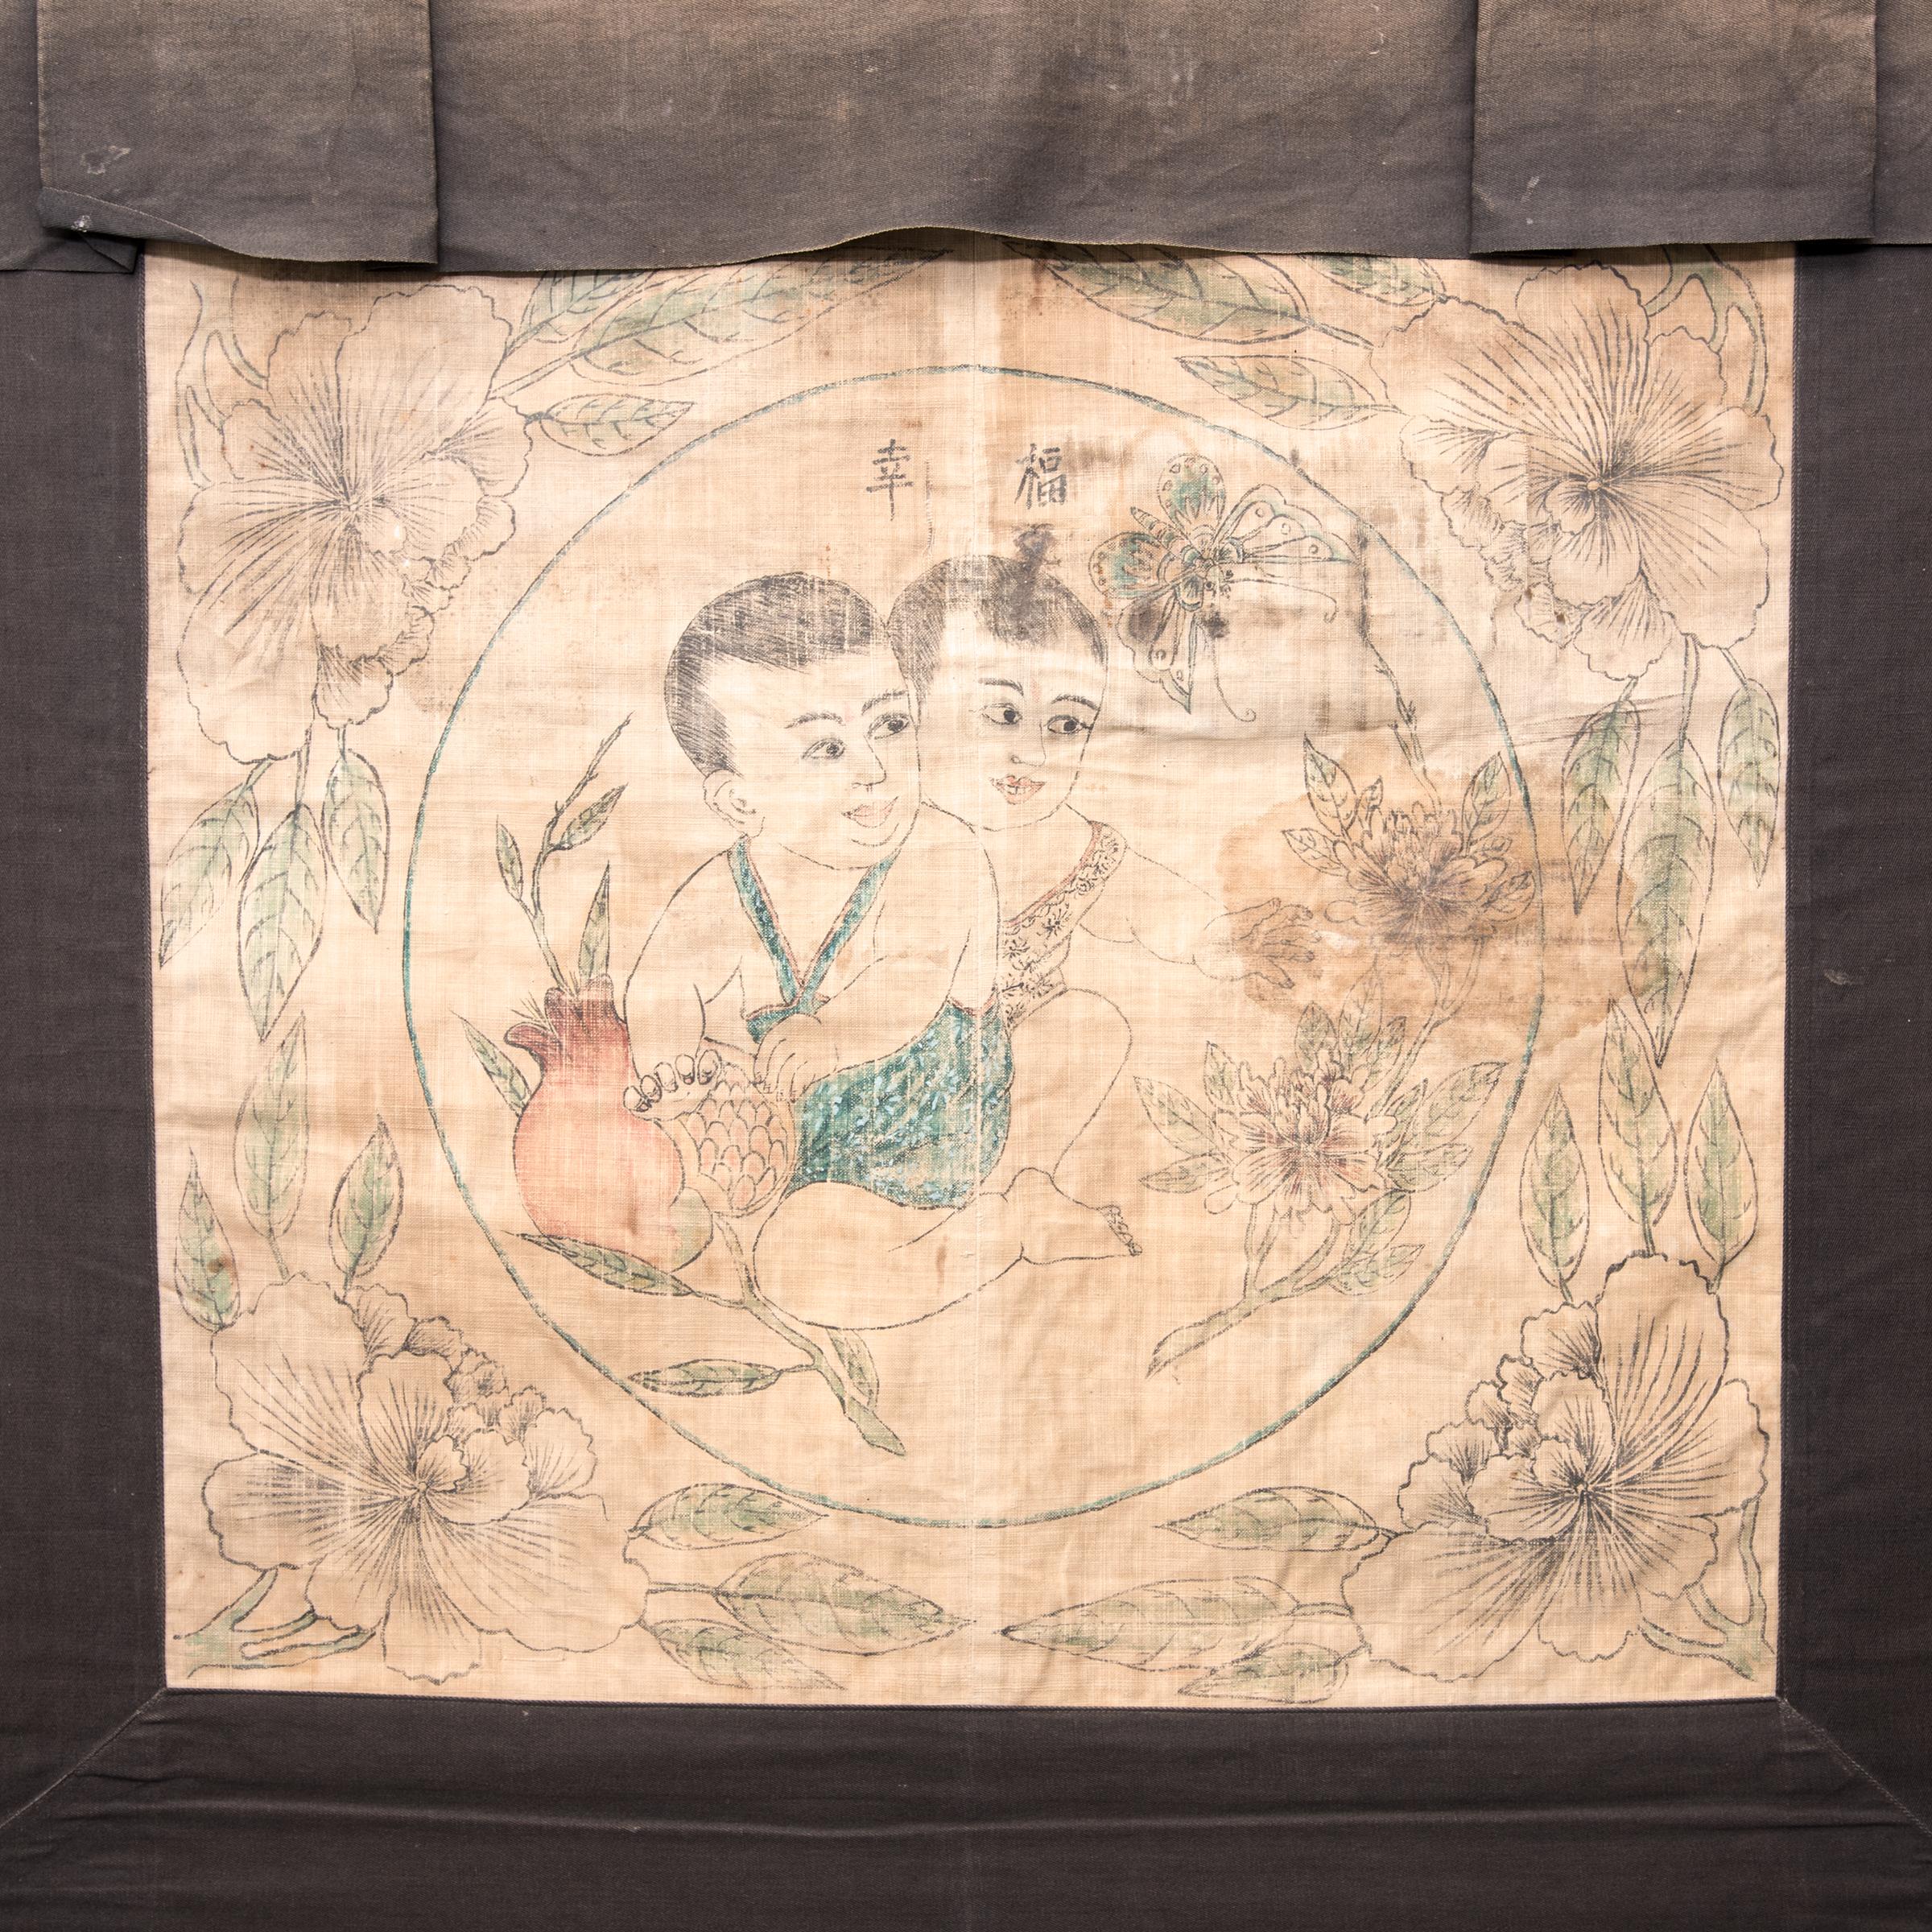 Dieser volkstümliche Wandbehang, der mit feinem Strich und frischer, skizzenhafter Qualität gezeichnet ist, vereint zwei Szenen von glücksbringenden Hoho-Lotus-Jungen, die in einen Rahmen eingefasst sind, der mit Früchten wie dem Granatapfel, einem